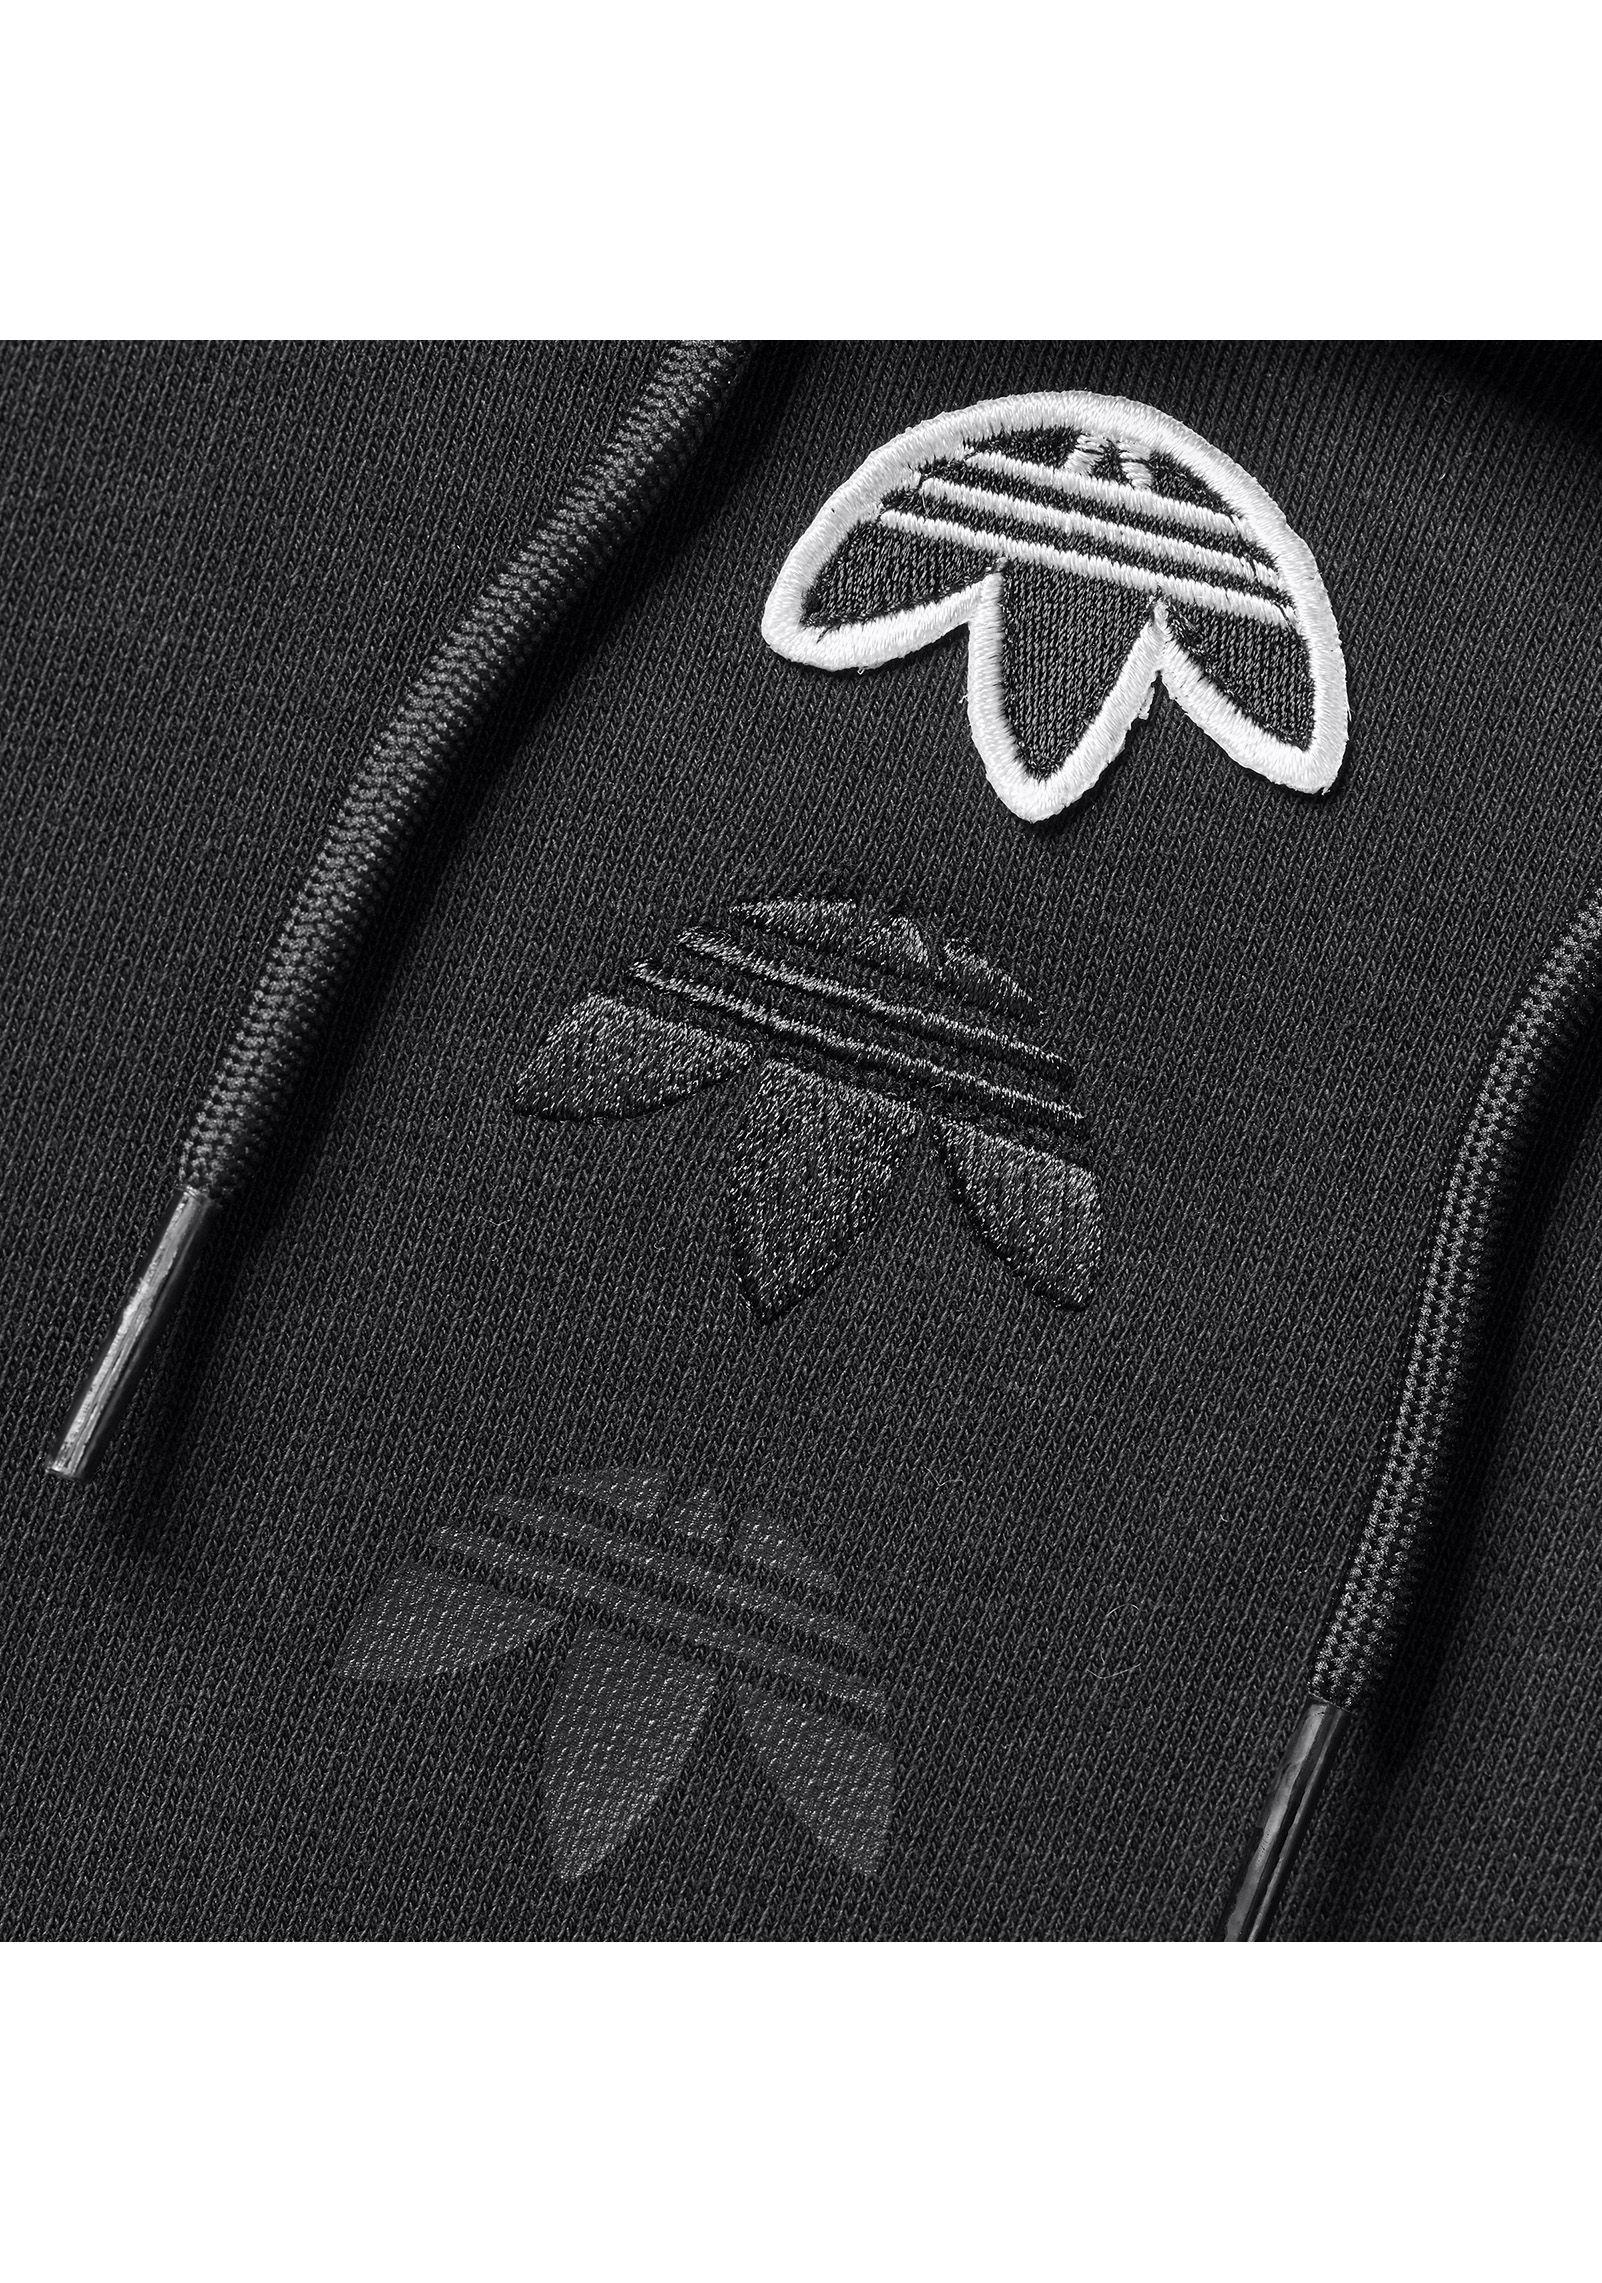 adidas hoodie upside down logo